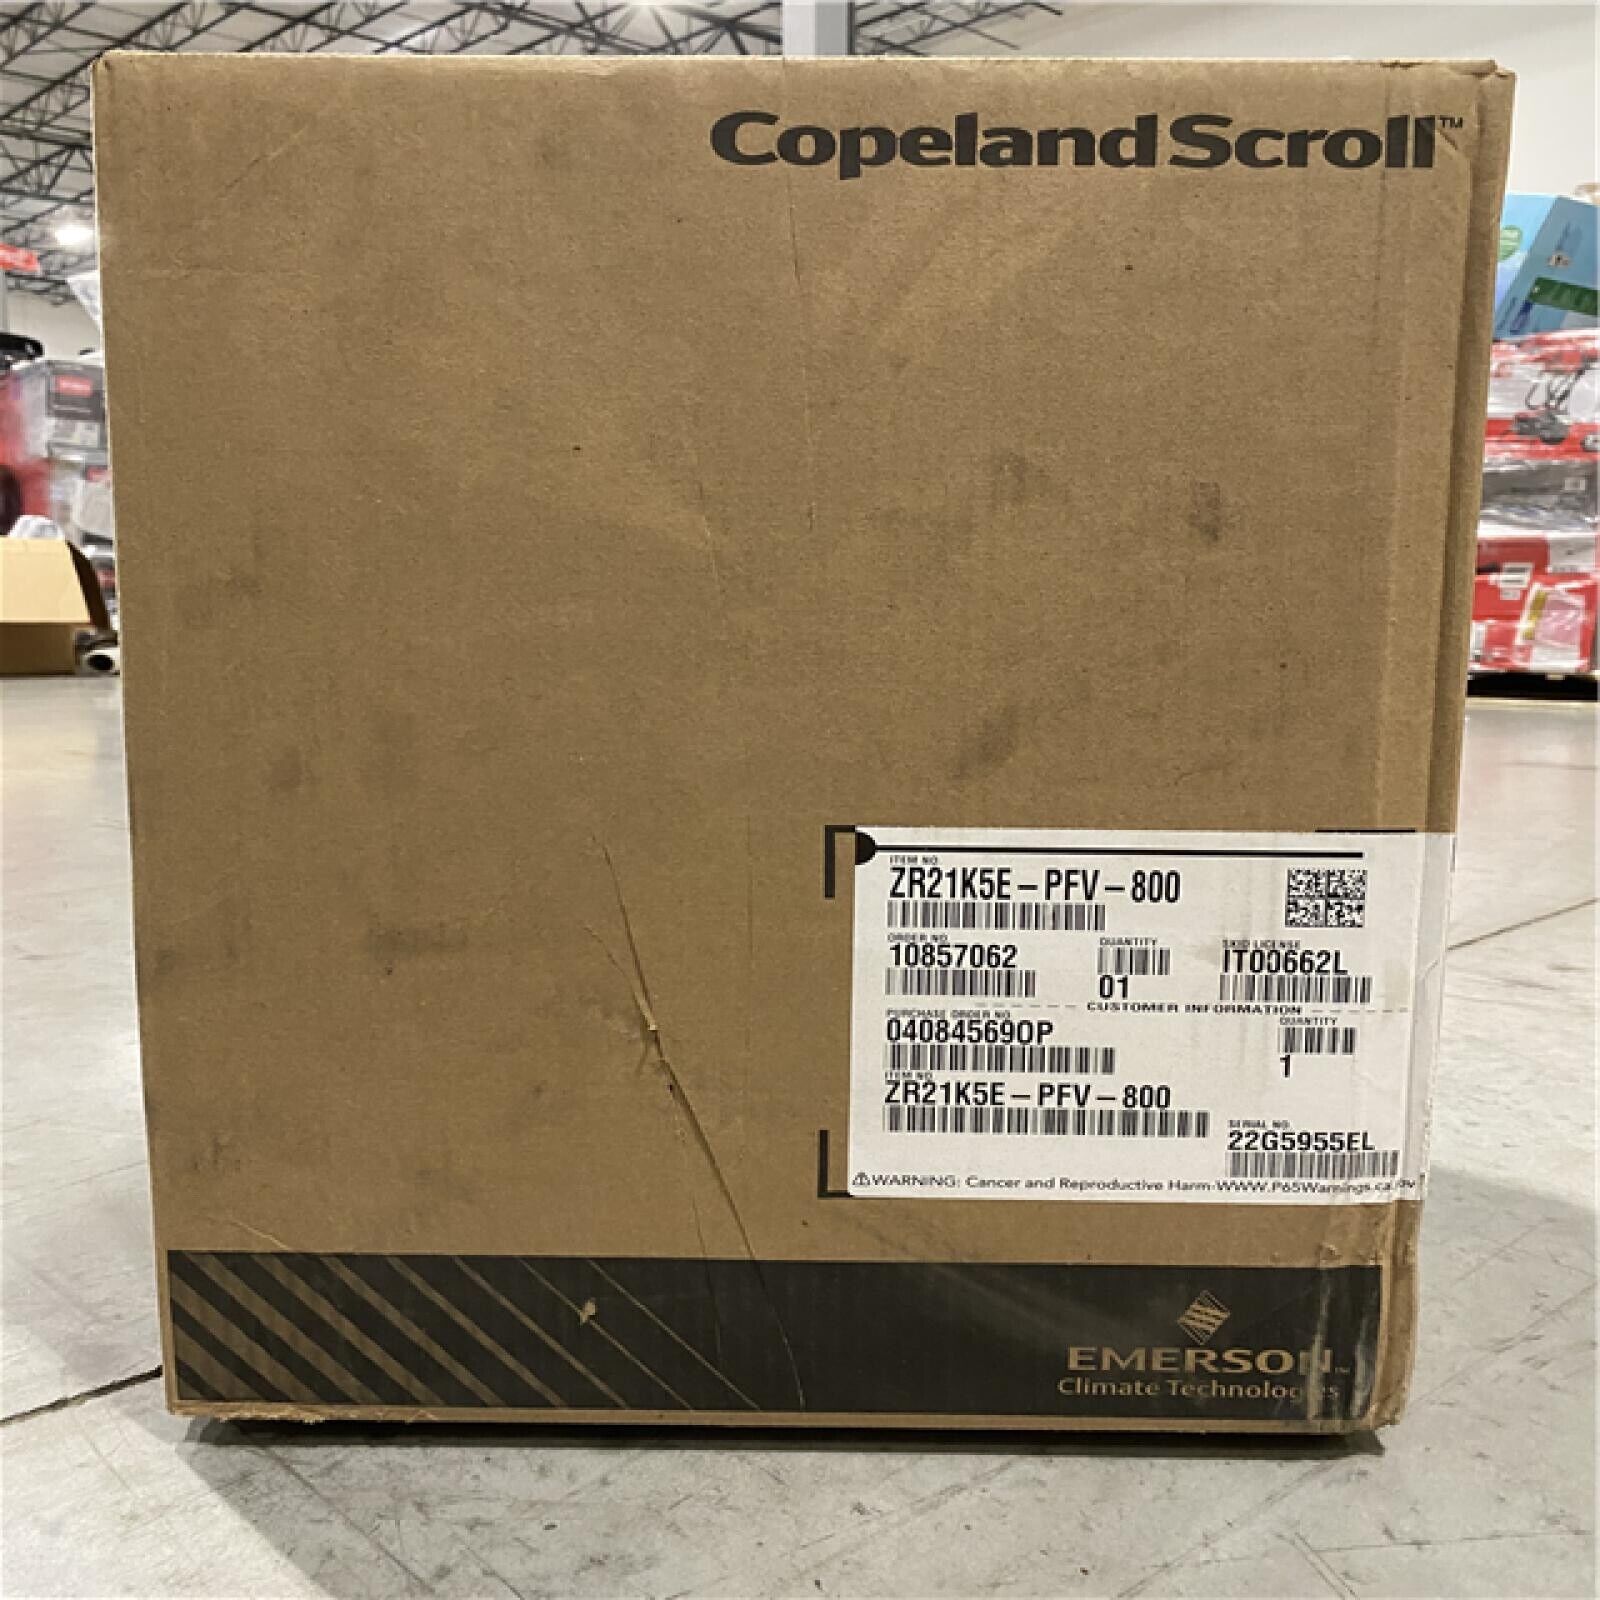 Copeland Scroll Compressor (ZR21K5E-PFV-800) - NEW - SEALED